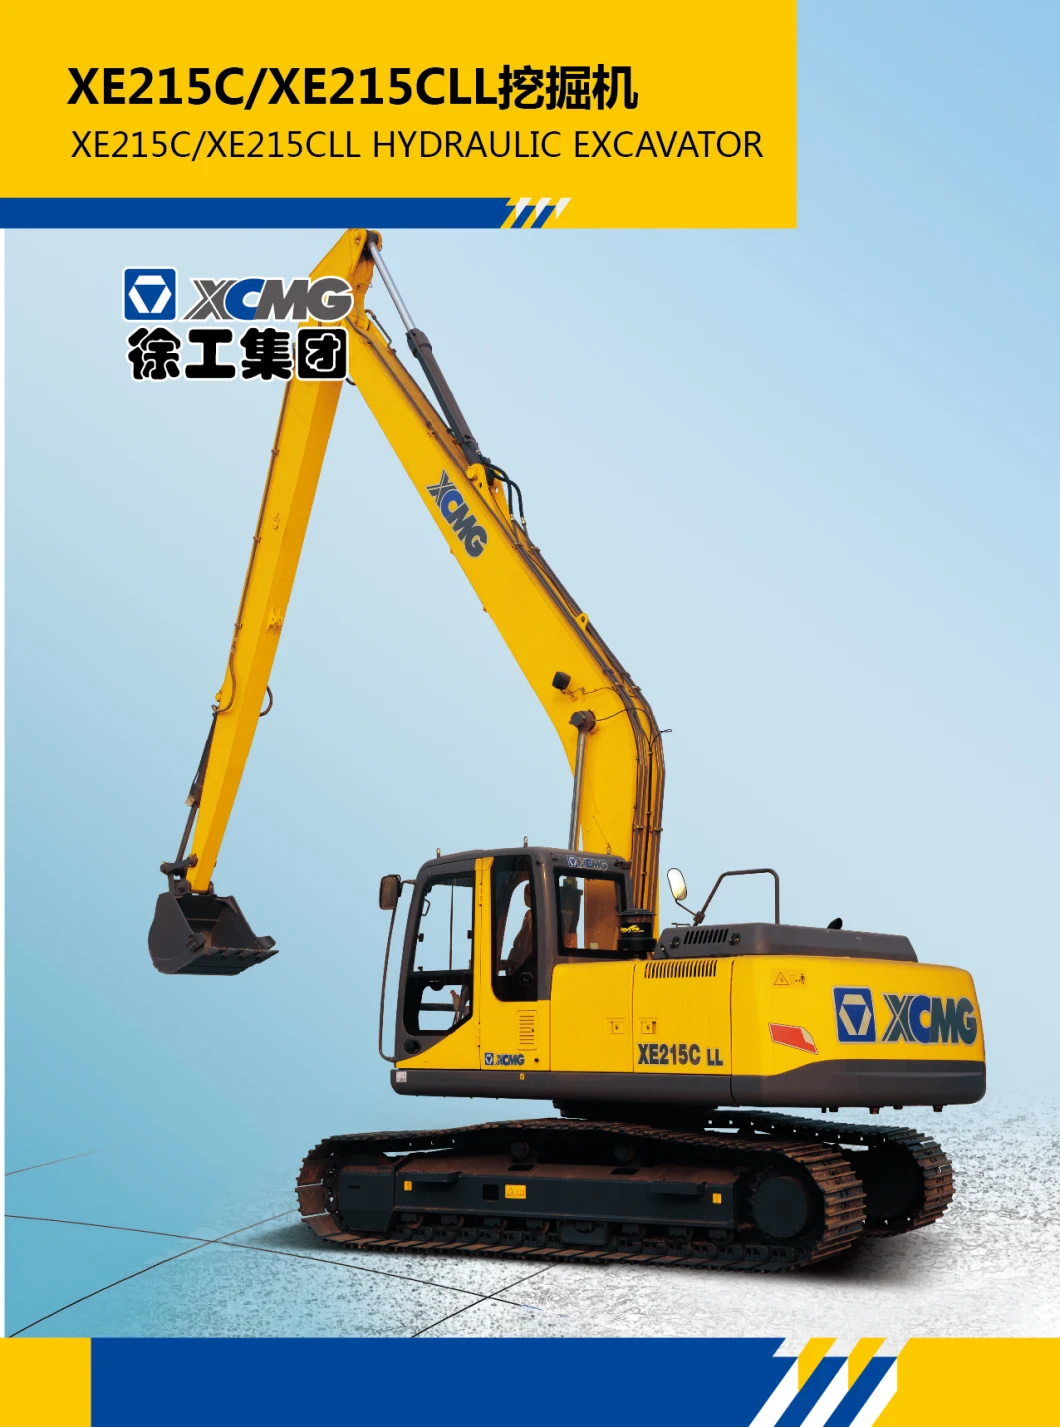 XCMG 26ton Mobile Backhoe Excavator Crawler Excavator Xe260cll